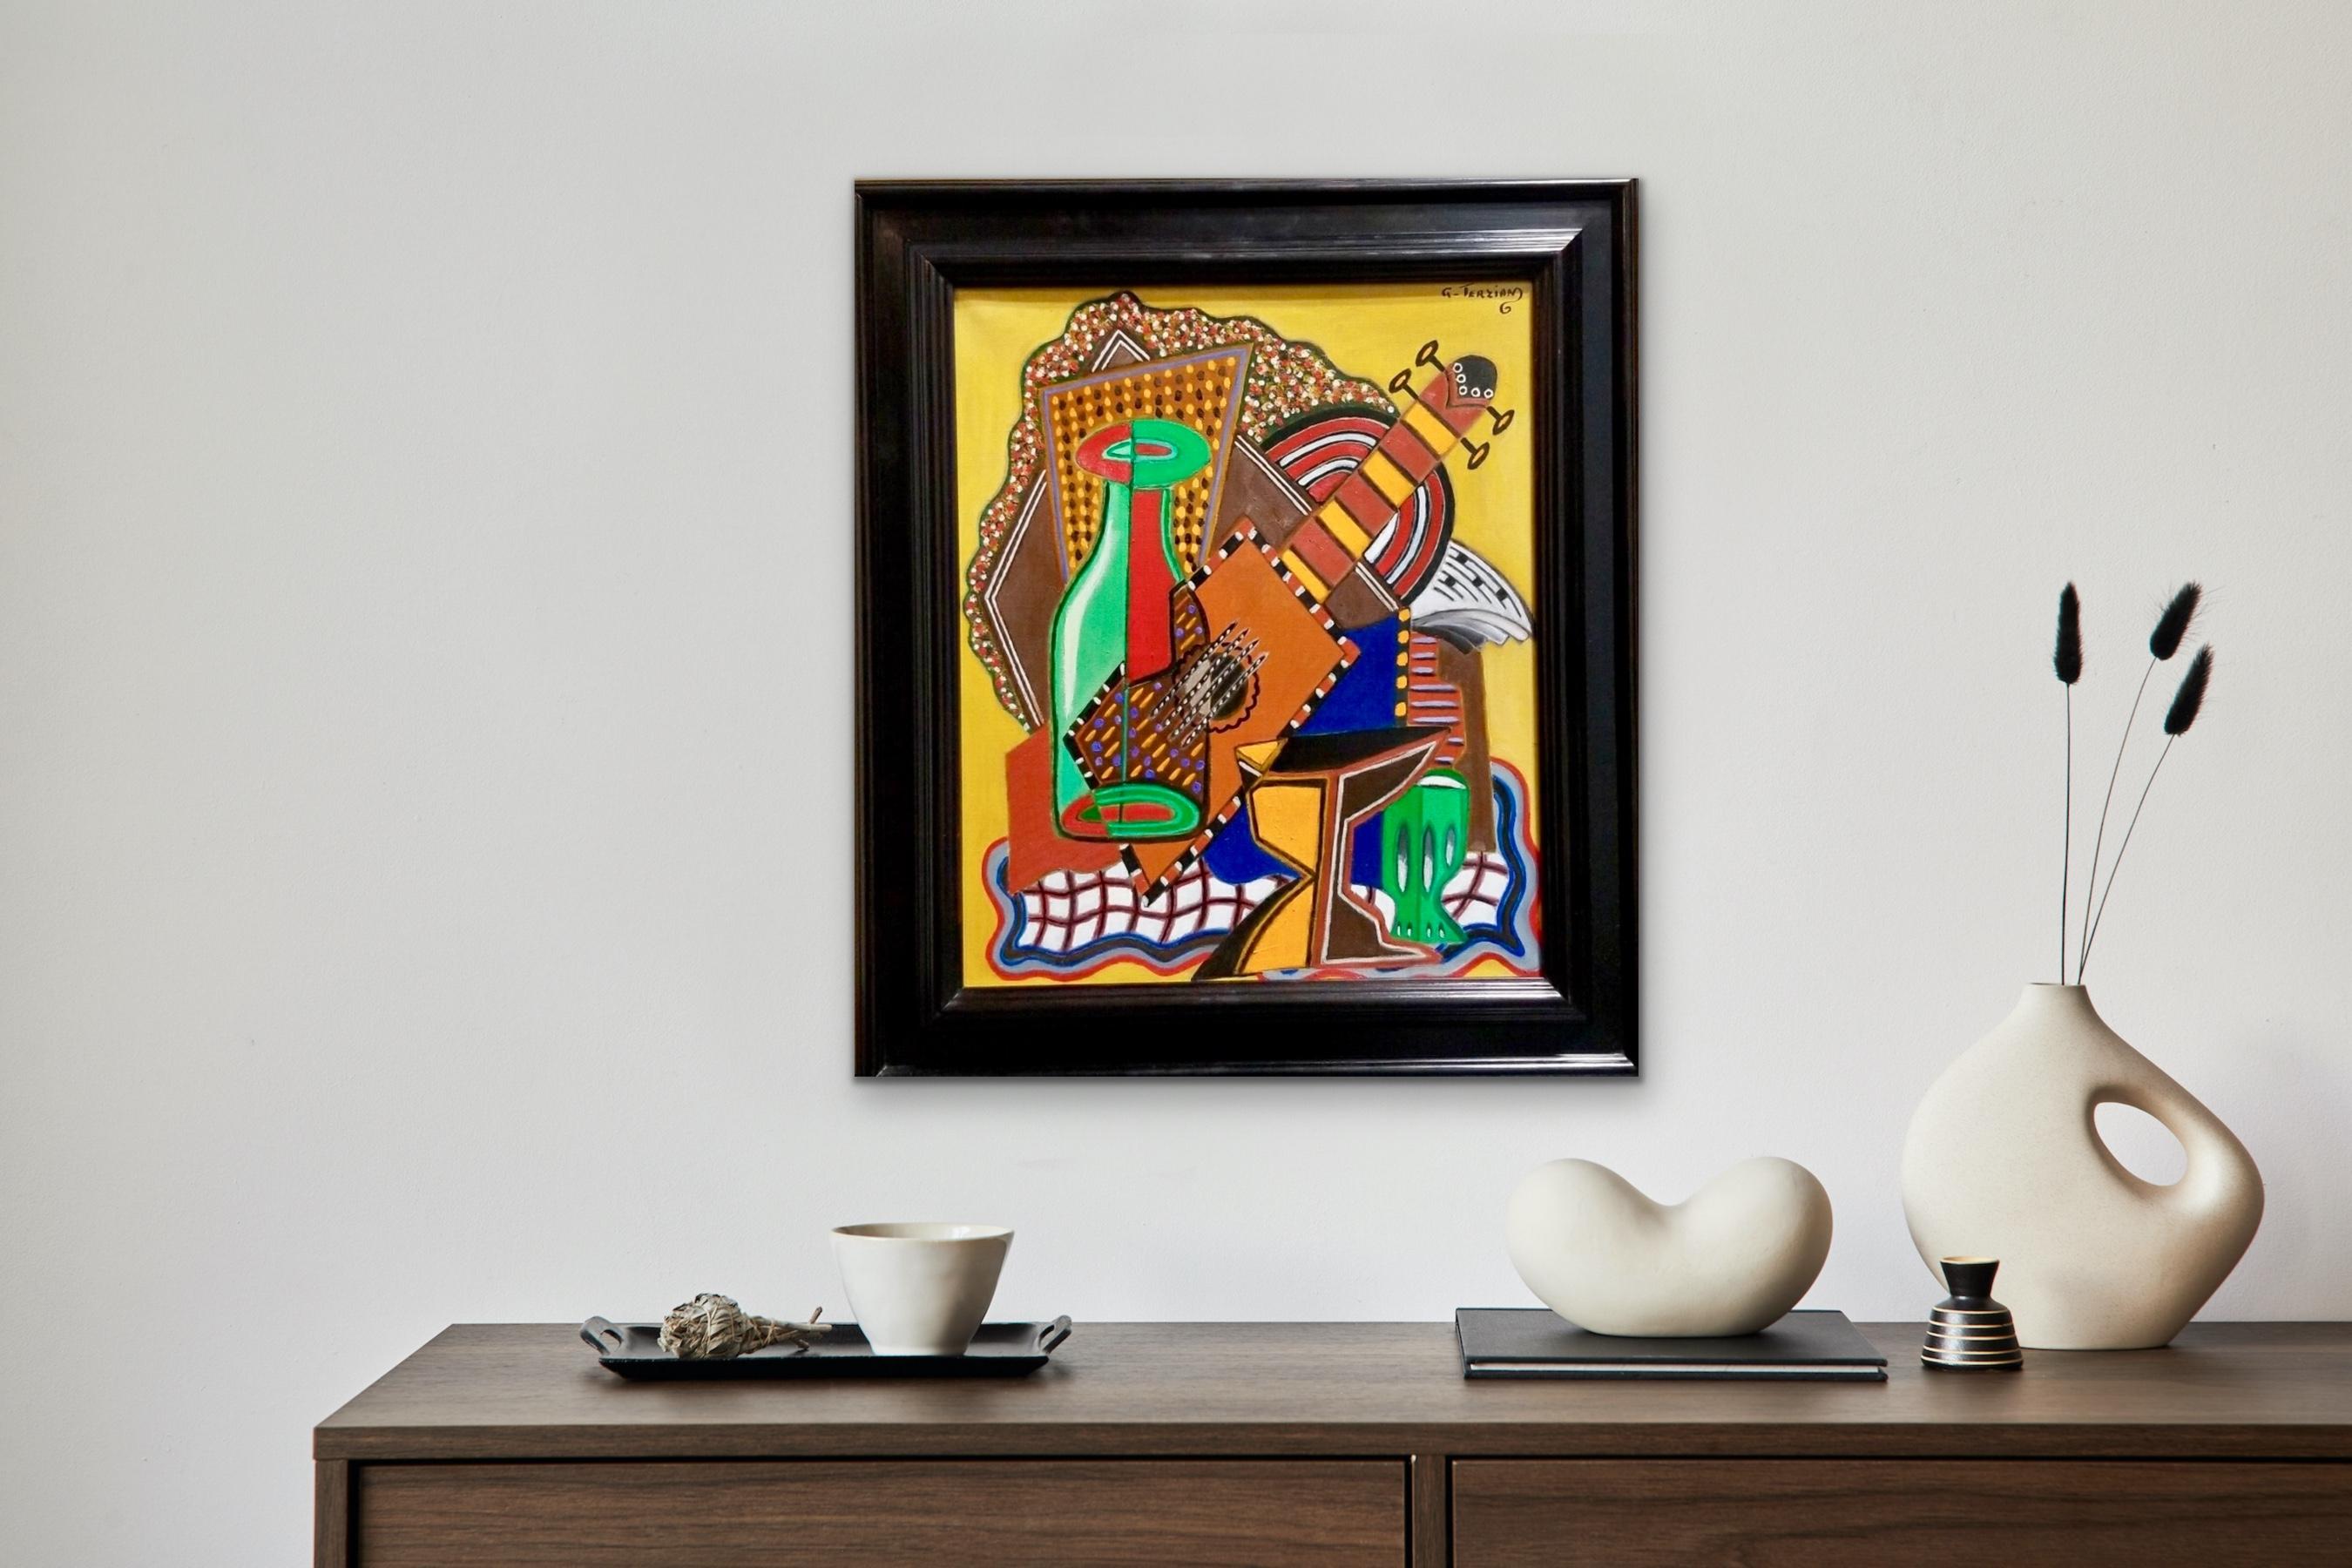 La Bouteille 2001 Öl auf Leinwand - Postkubistisches Stillleben Gitarre und Flasche Musik, Öl auf Leinwand (Kubismus), Painting, von Georges Terzian